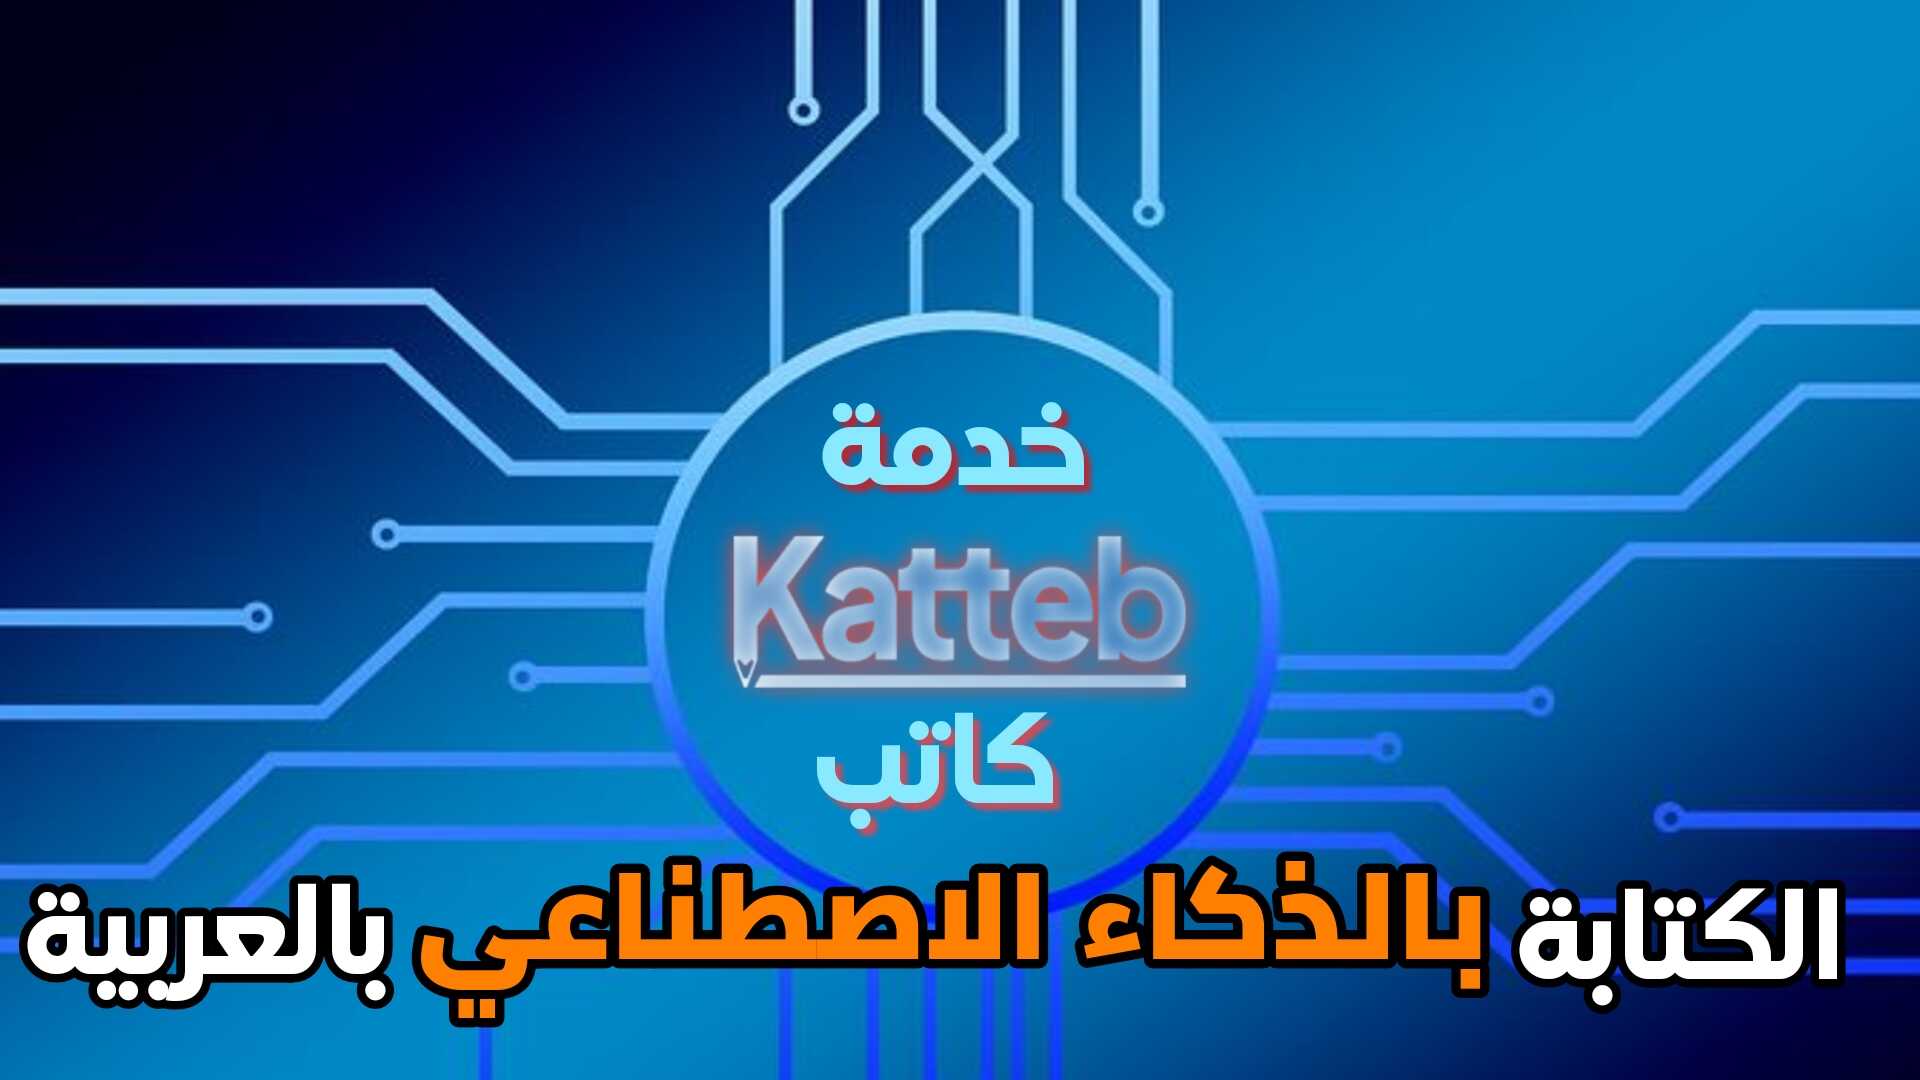 خدمة كاتب Katteb للكتابة بالذكاء الاصطناعي باللغة العربية